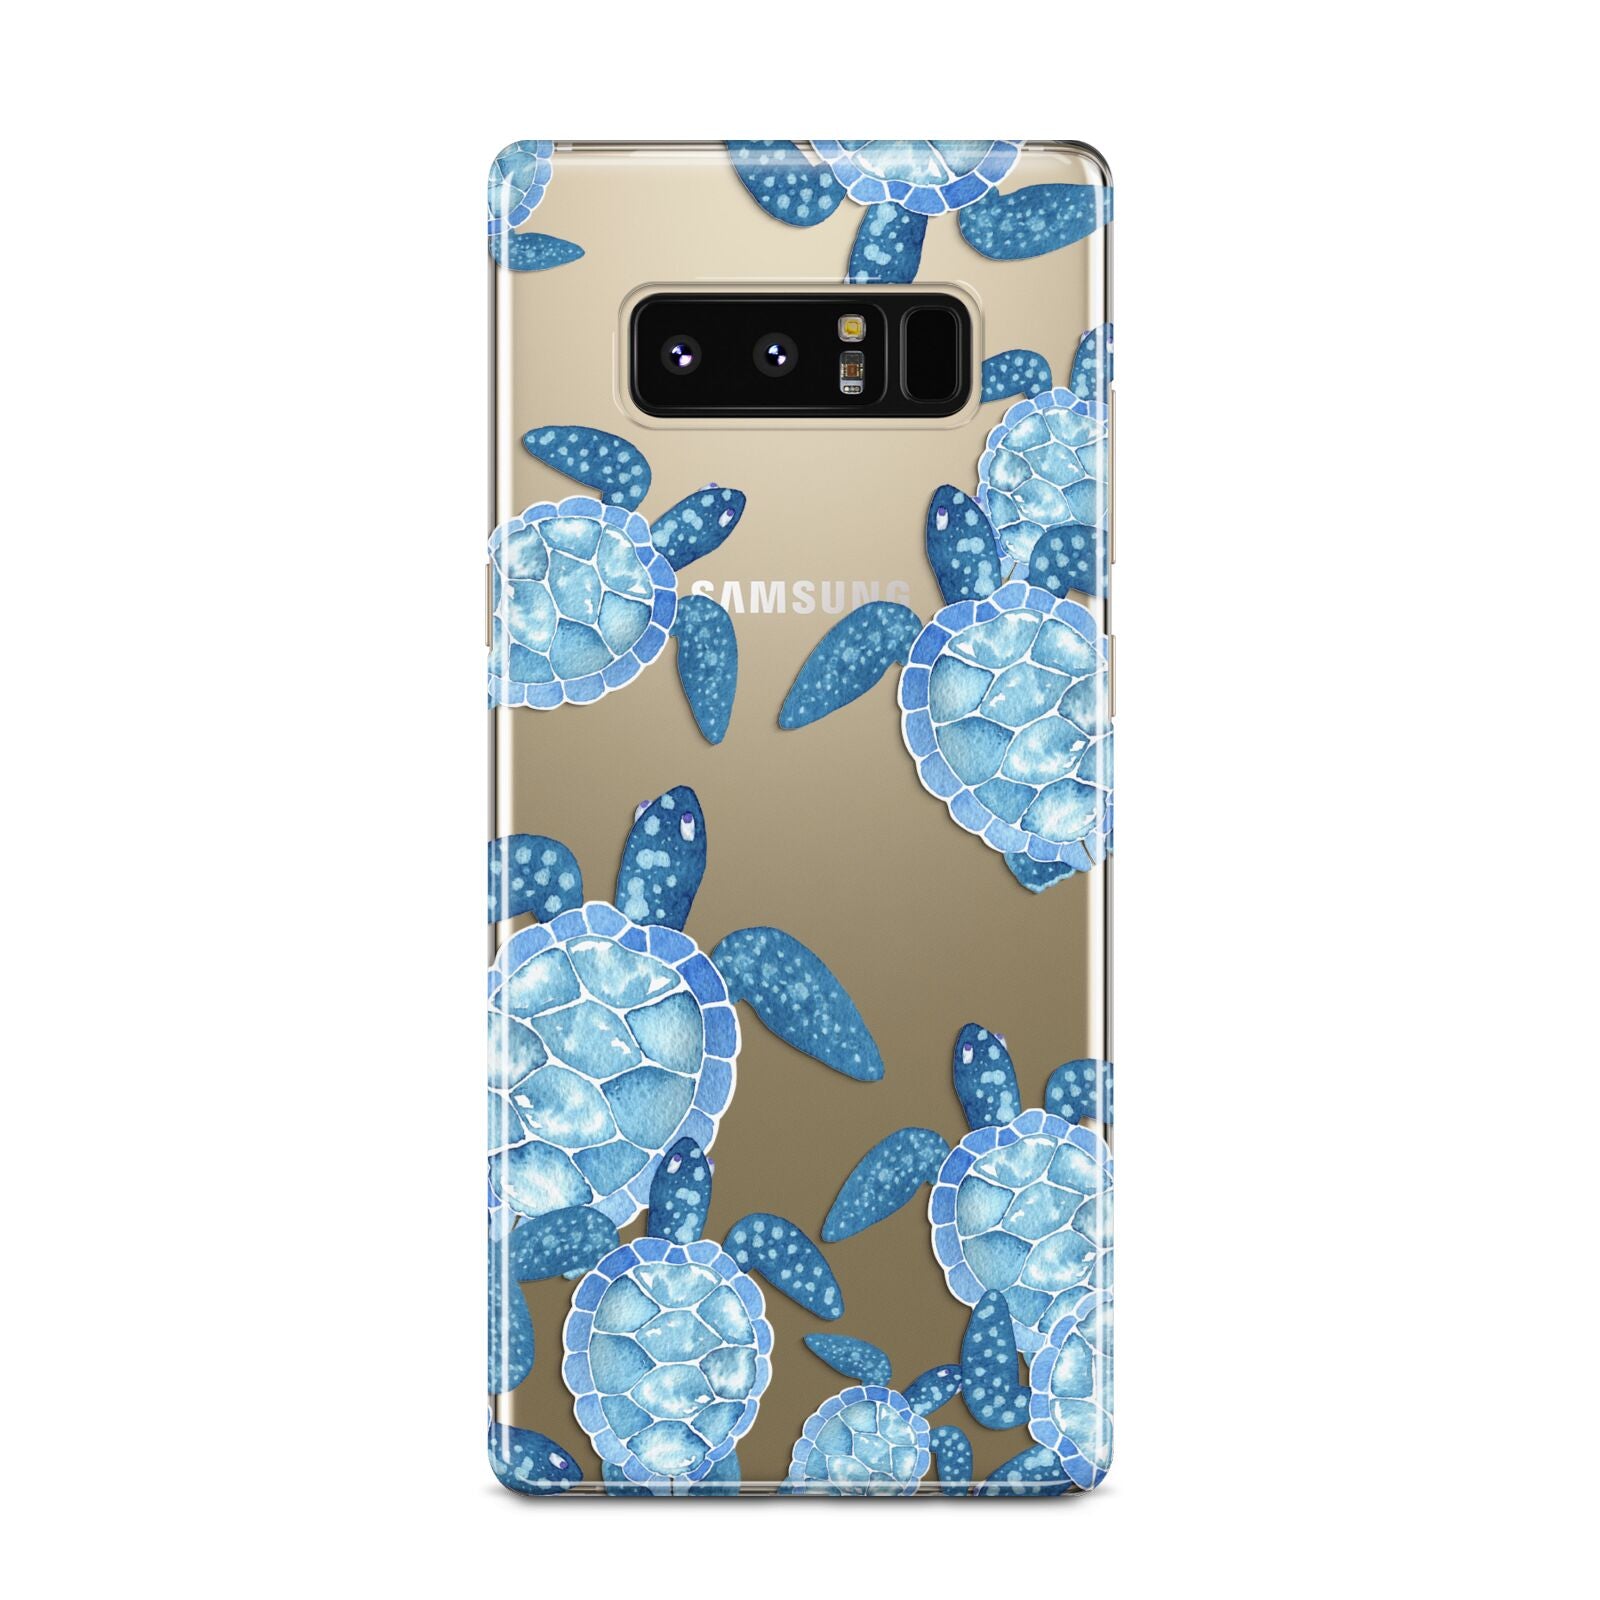 Turtle Samsung Galaxy Note 8 Case